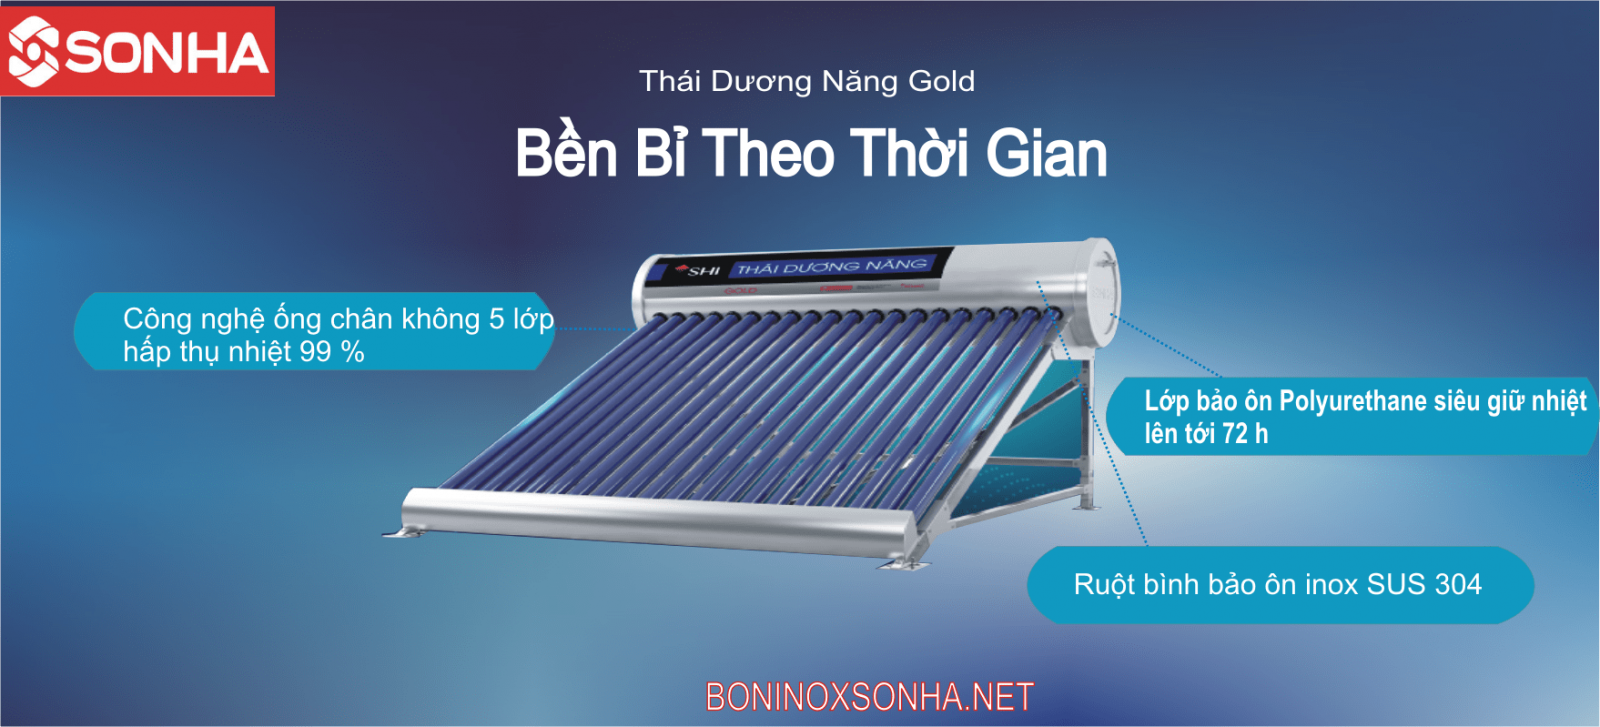 THÁI DƯƠNG NĂNG GOLD 58 - 300 Chân Không Sơn hà